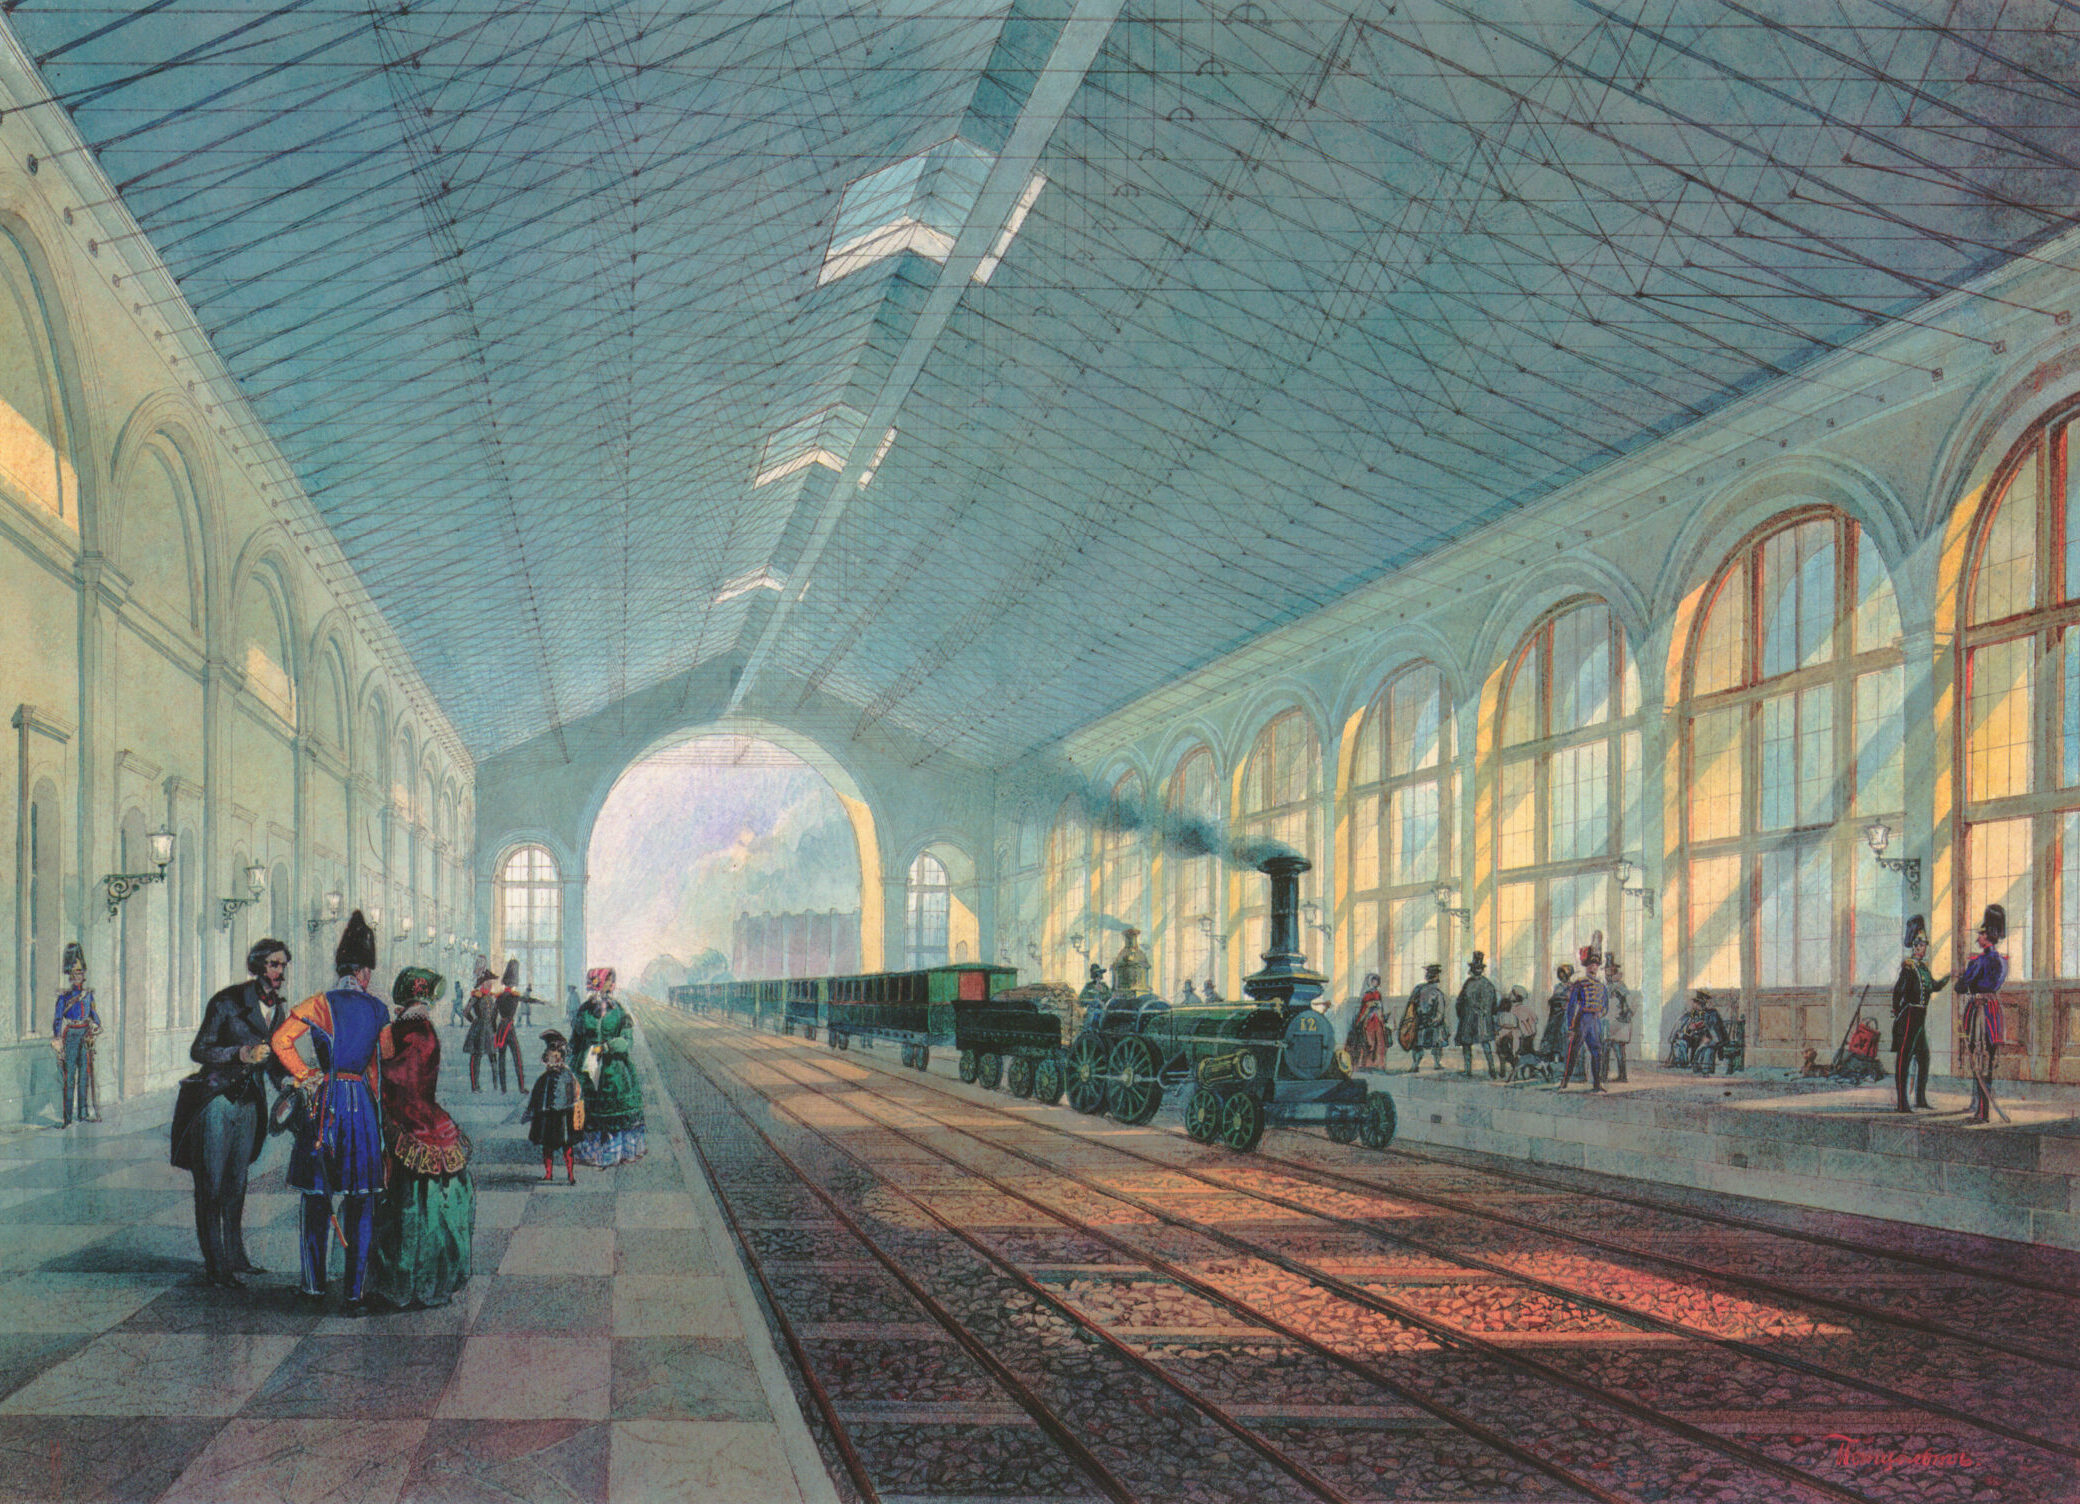 Крытый перрон (галерея) Санкт-Петербургской пассажирской станции, акварель А. Петцольта. 1851 год